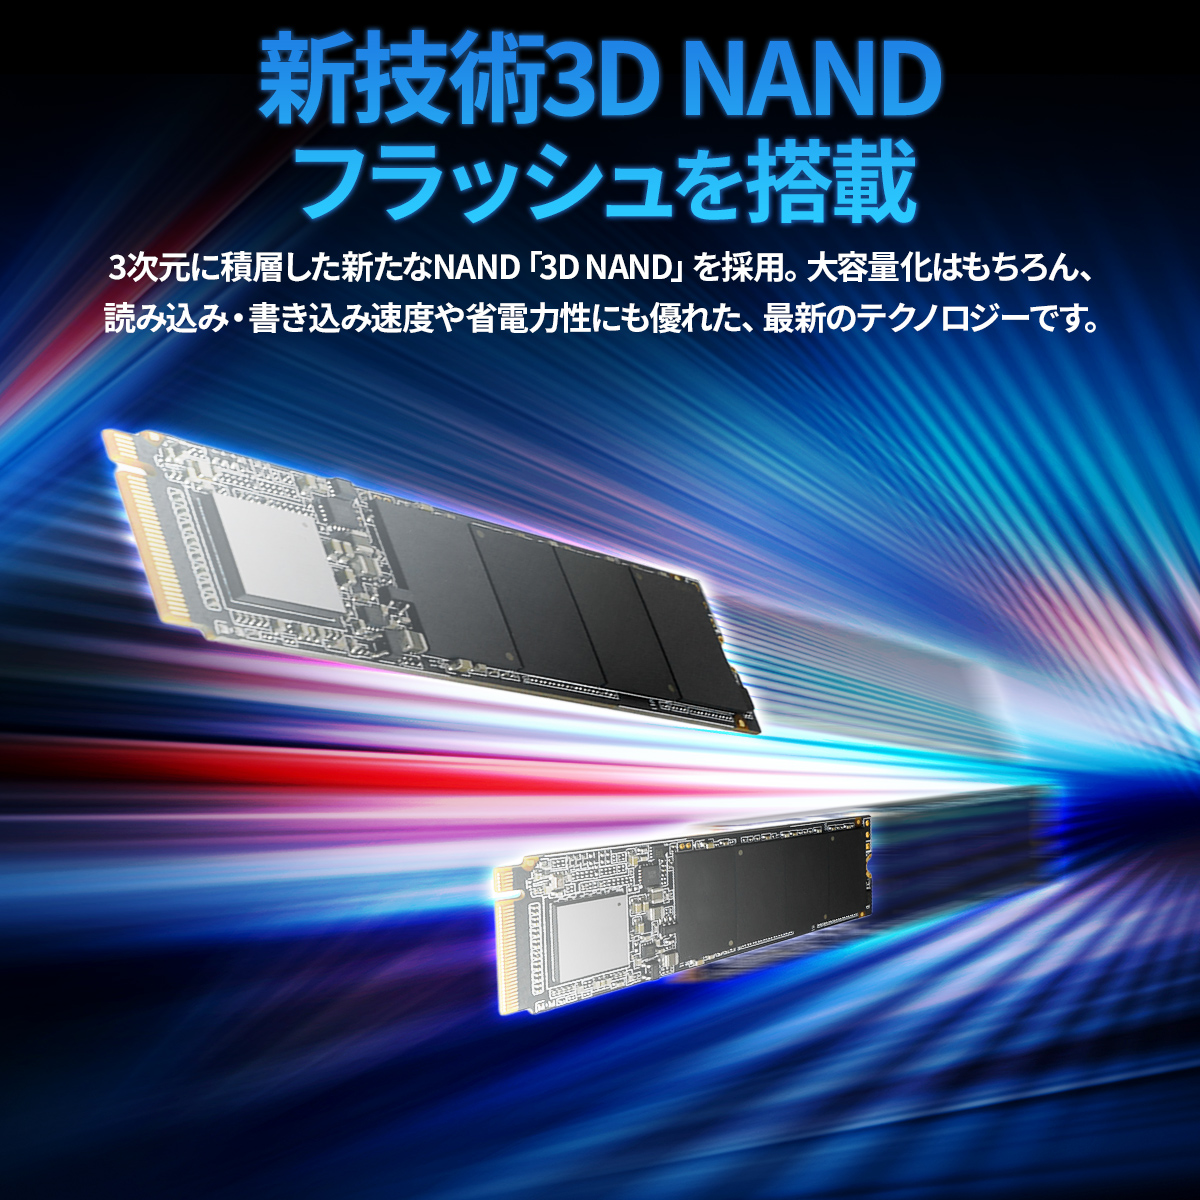 3D NAND M.2 PCIe Gen3x4 SSD ADC-M2D1P80 シリーズ - 株式会社